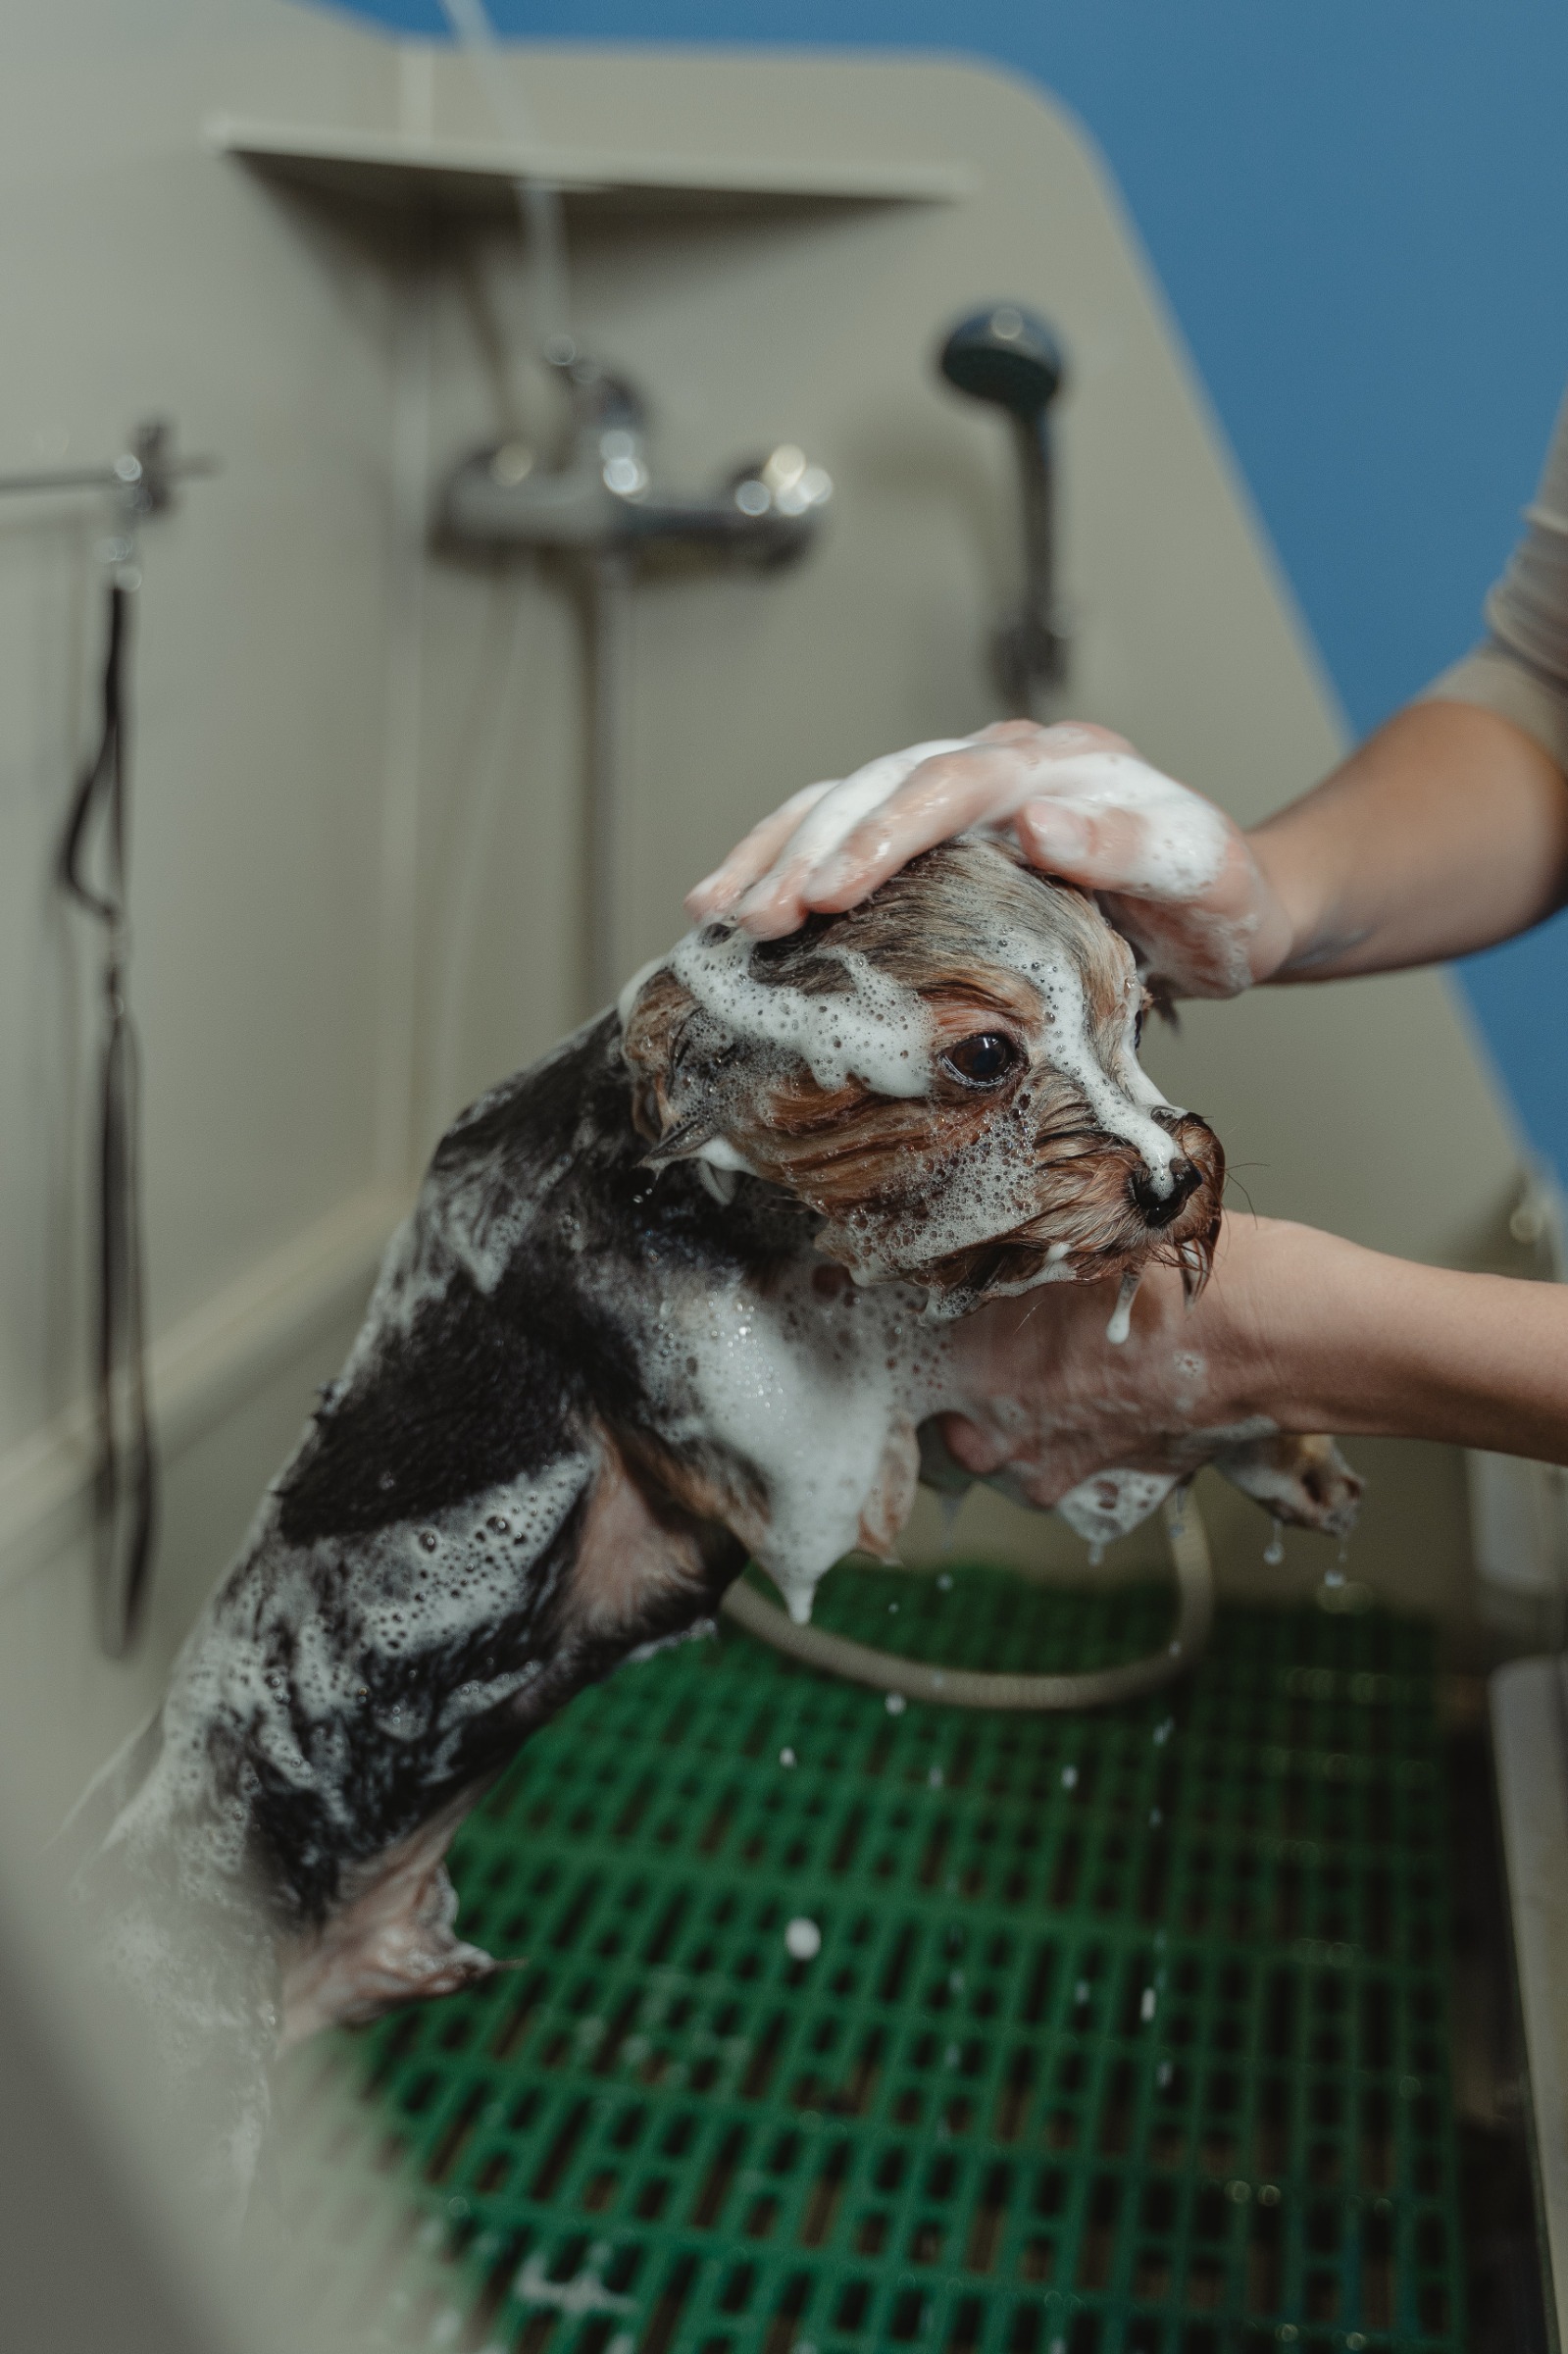 self-serve dog wash station for patrons